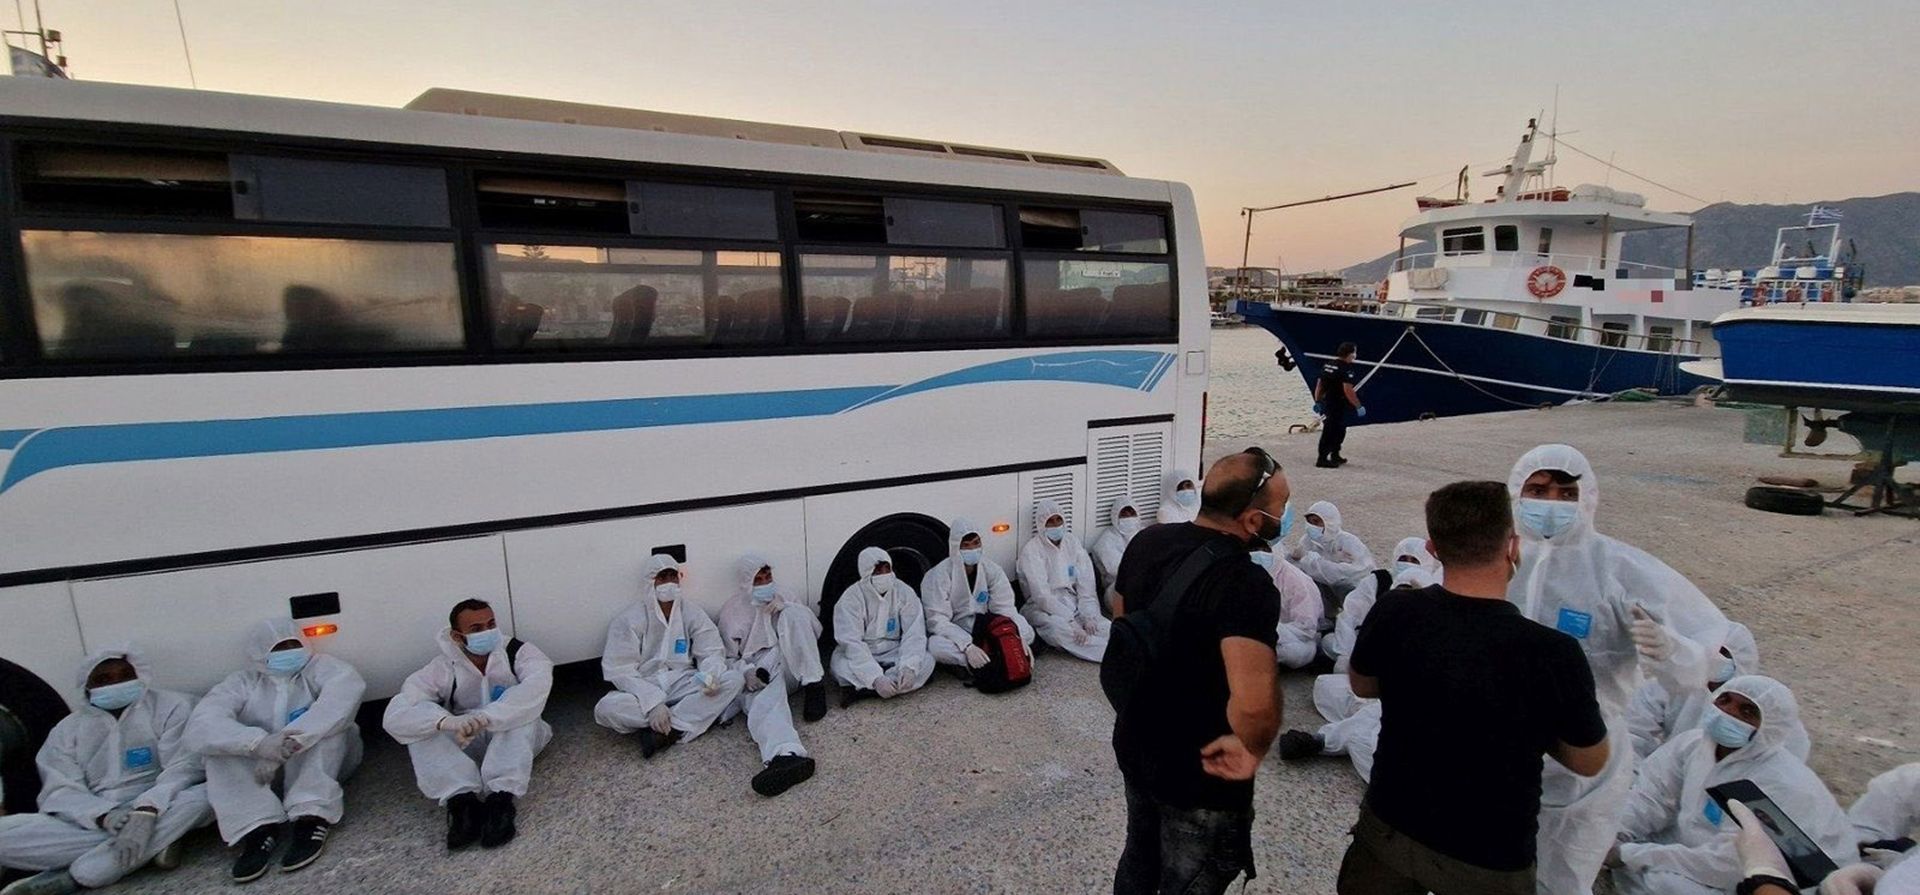 Migrantes en un puerto en la isla de Kos, en el sureste del mar Egeo, Grecia, después de una operación de rescate el miércoles 10 de agosto de 2022. Las autoridades griegas realizaron una importante operación de búsqueda y rescate de decenas de personas que se creían desaparecidas en el mar.